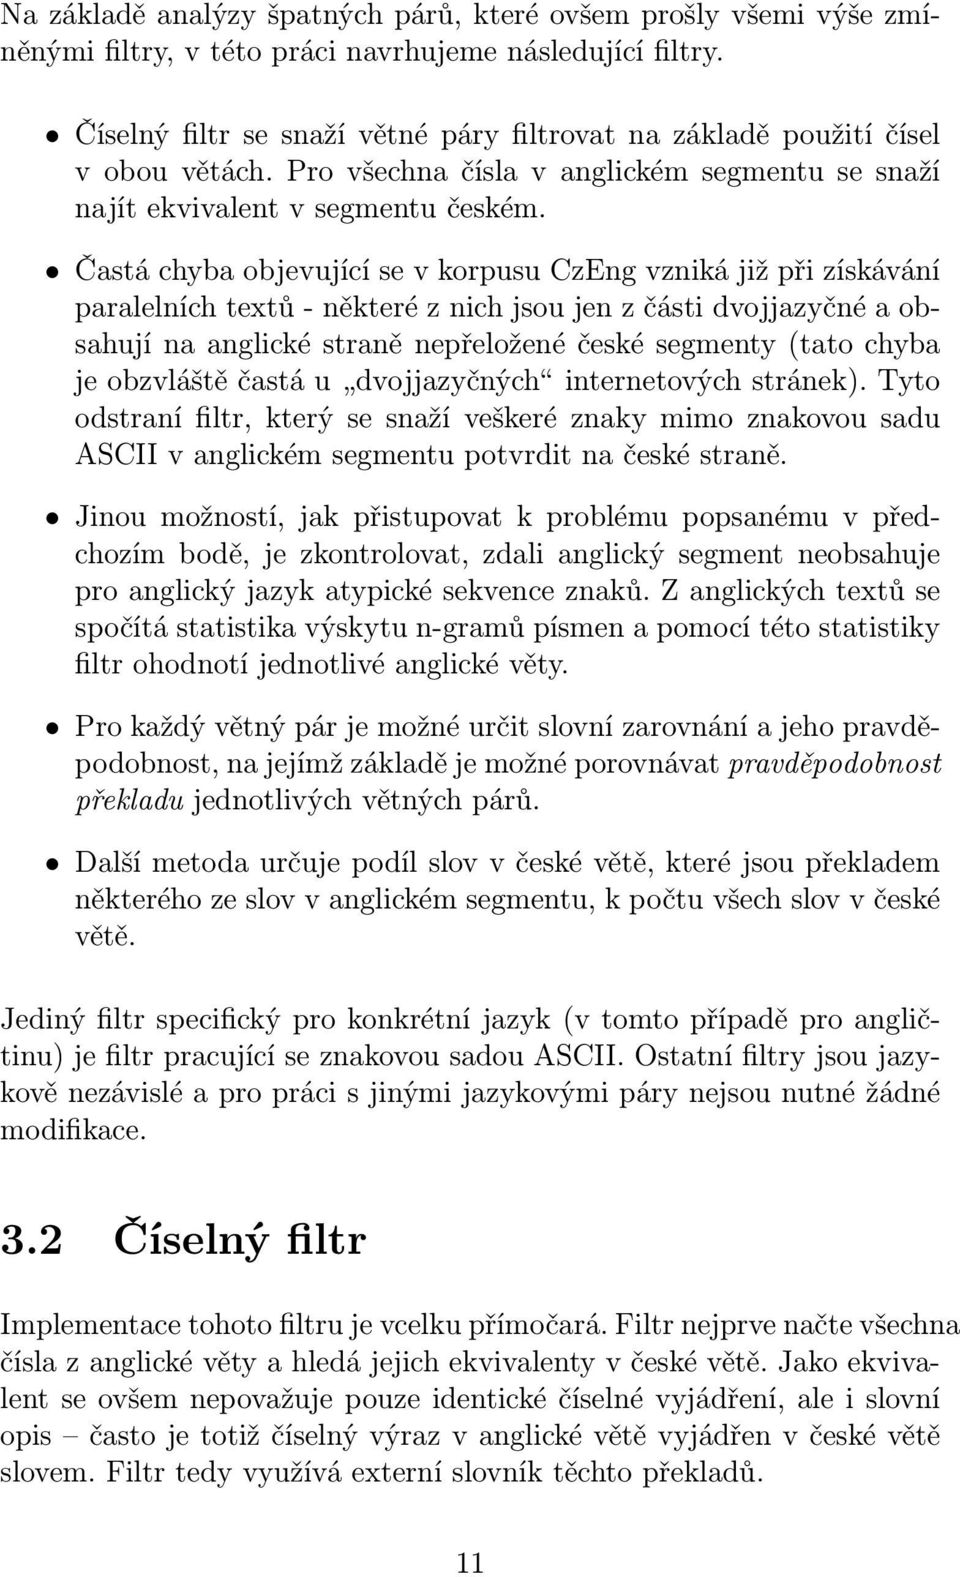 Častá chyba objevující se v korpusu CzEng vzniká již při získávání paralelních textů - některé z nich jsou jen z části dvojjazyčné a obsahují na anglické straně nepřeložené české segmenty (tato chyba